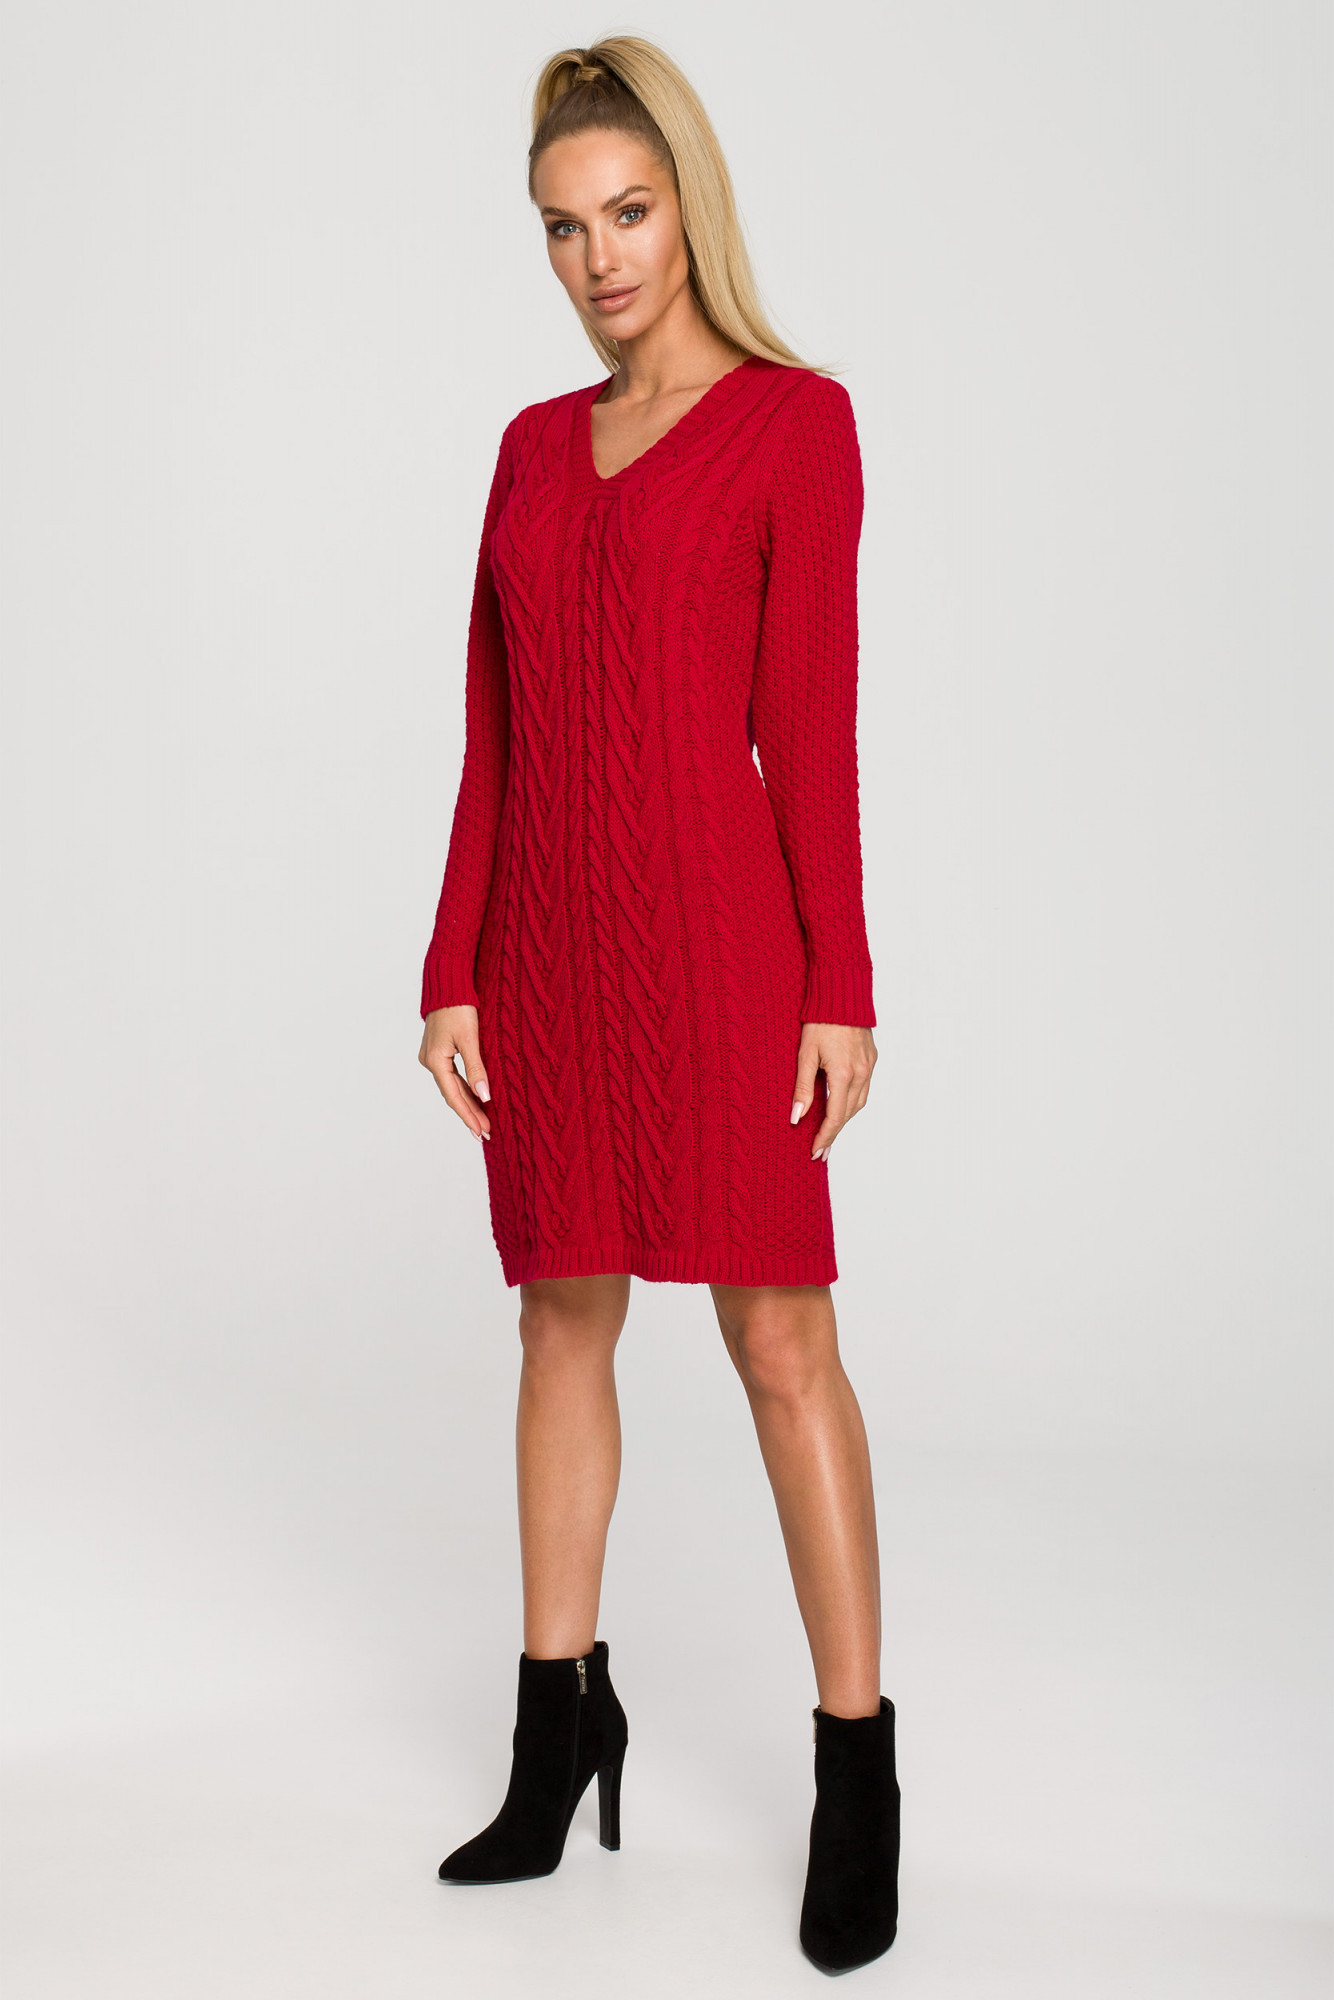 Dámské šaty model 17976142 červená L/XL - Moe